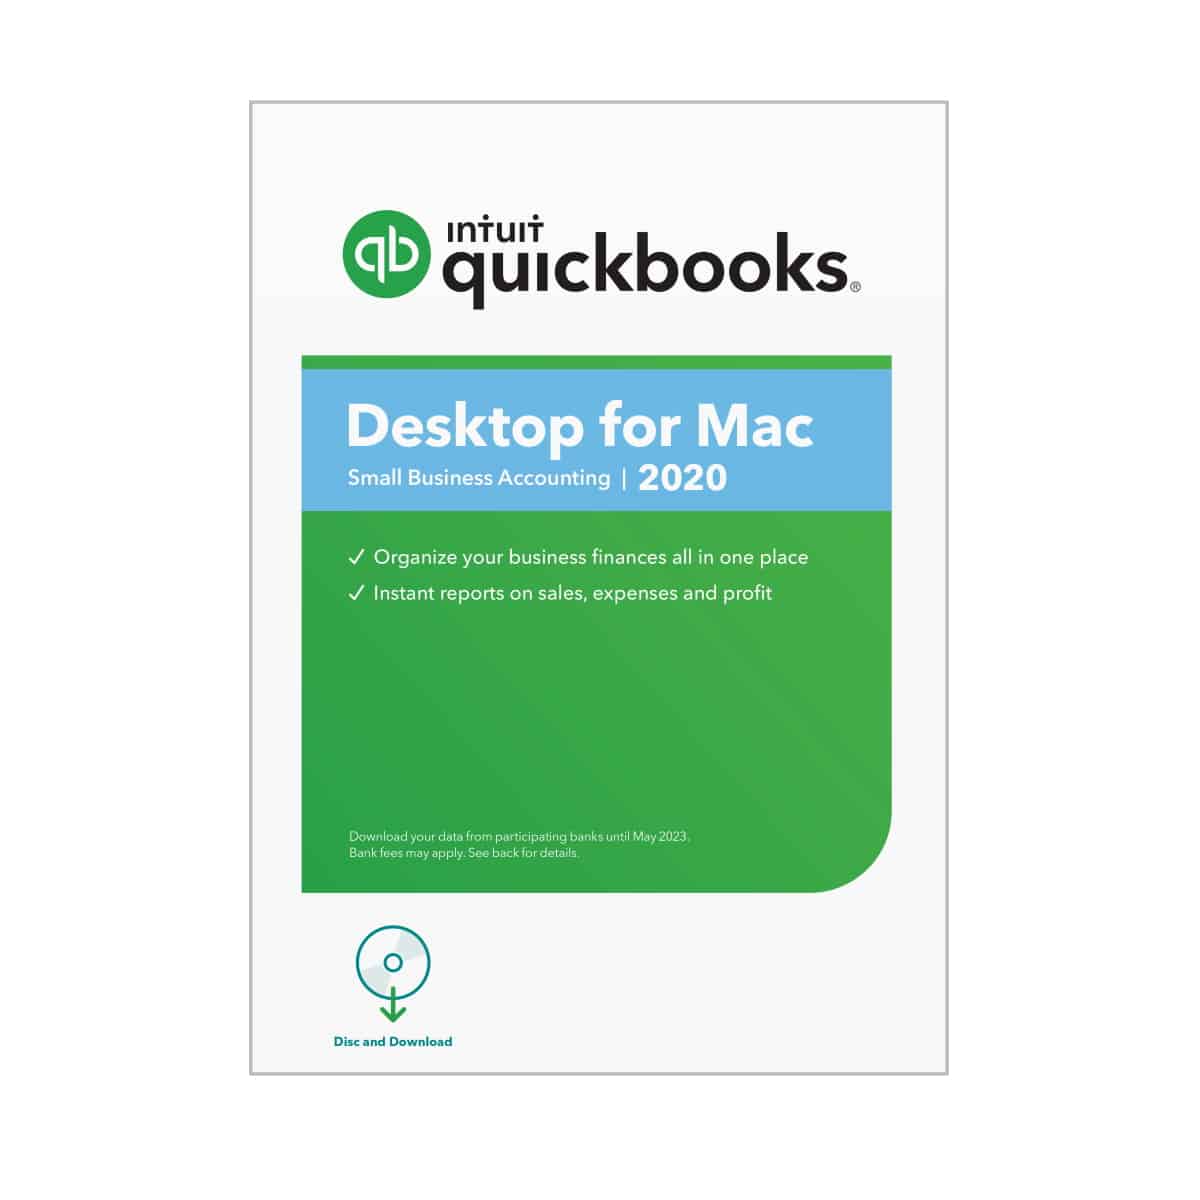 quickbooks for mac